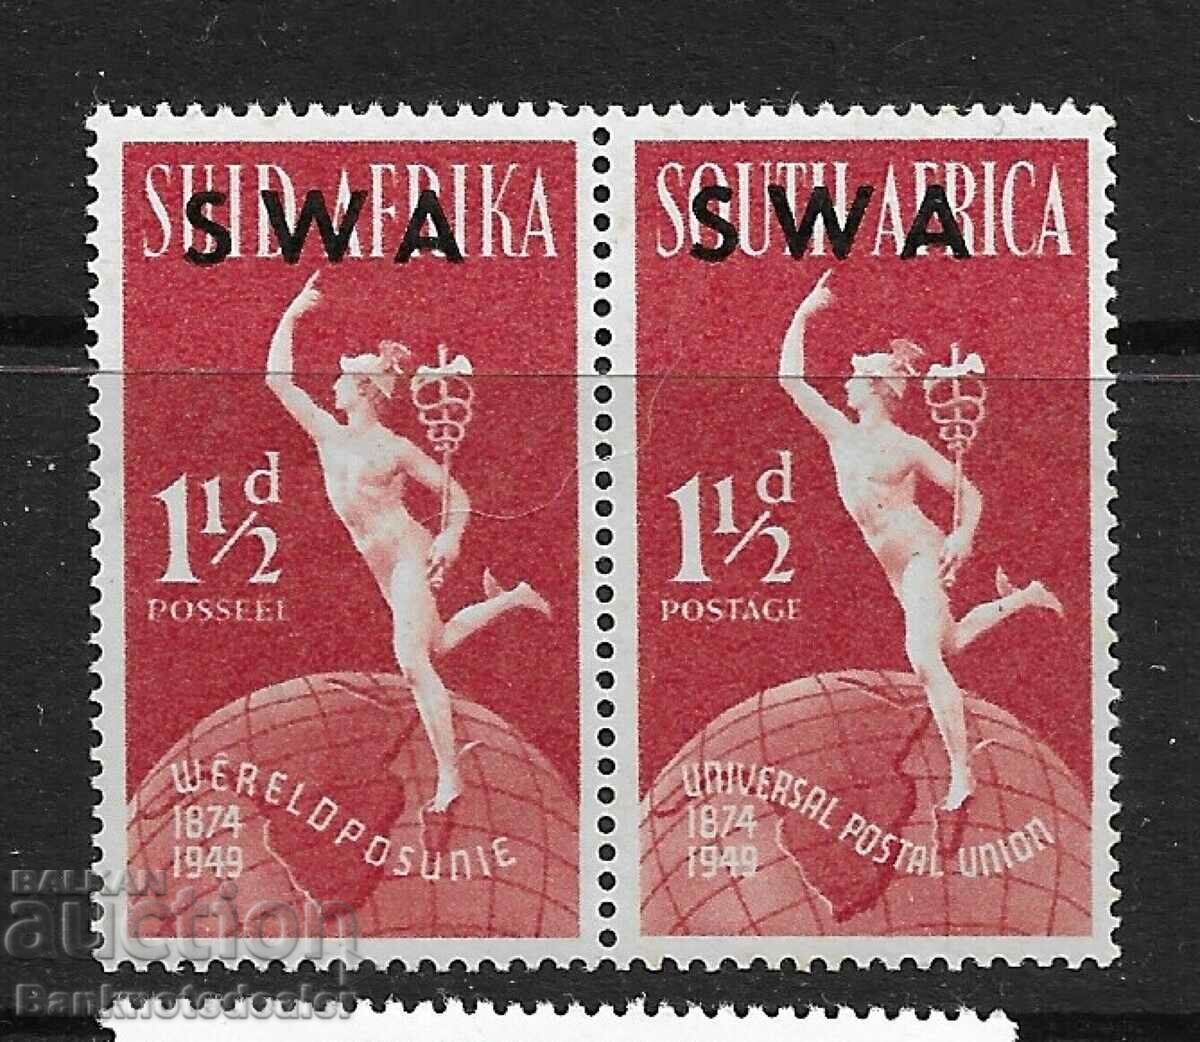 Νοτιοδυτική Αφρική 1949 1,5d pair mounted mint